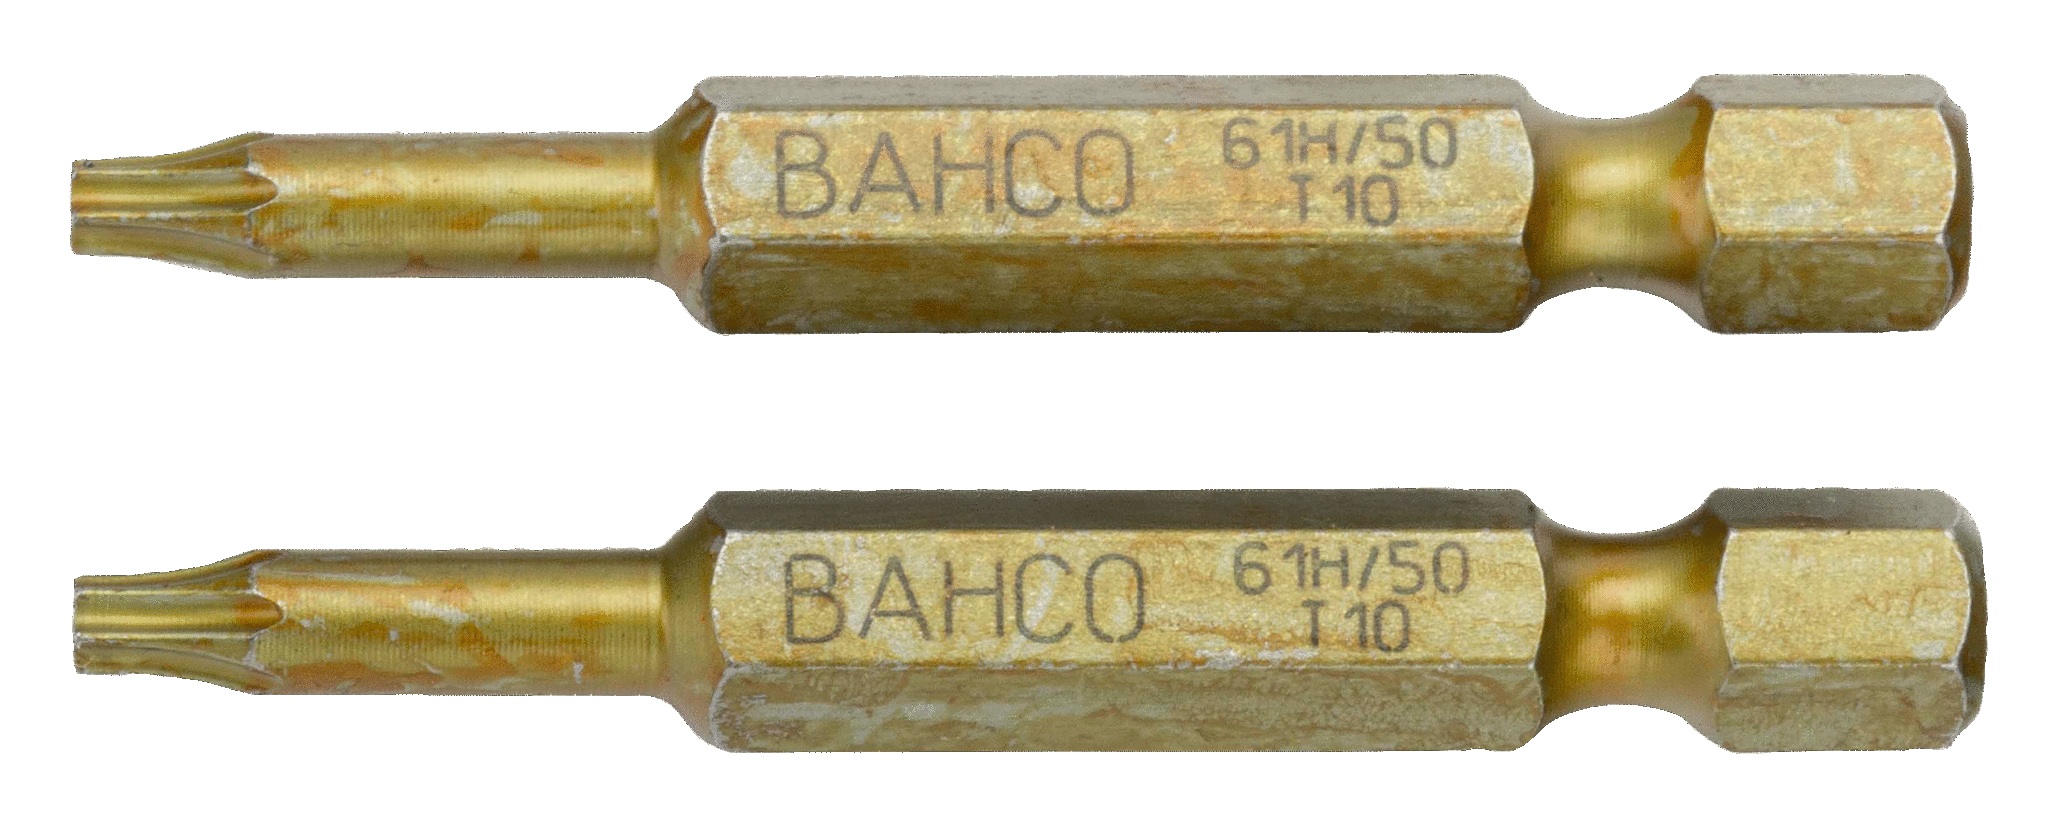 картинка Особо прочные торсионные биты для отверток Torx®, 50 мм BAHCO 61H/50T10 от магазина "Элит-инструмент"